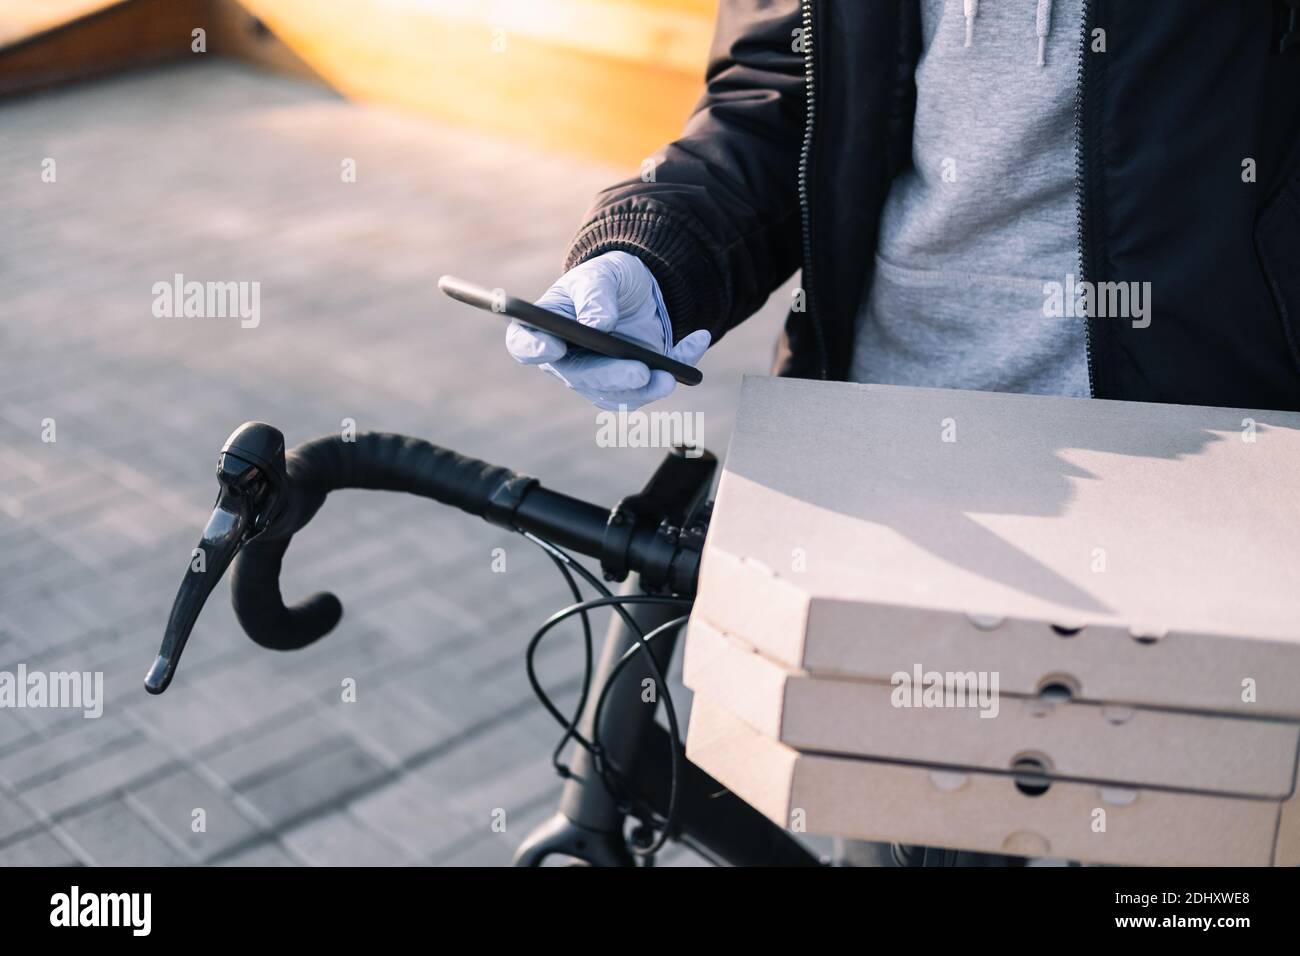 La persona encargada de la entrega junto a una bicicleta tiene cajas de pizza y un teléfono. Trabajo como mensajero, profesión de mensajero de bicicleta, concepto de trabajo a tiempo parcial Foto de stock